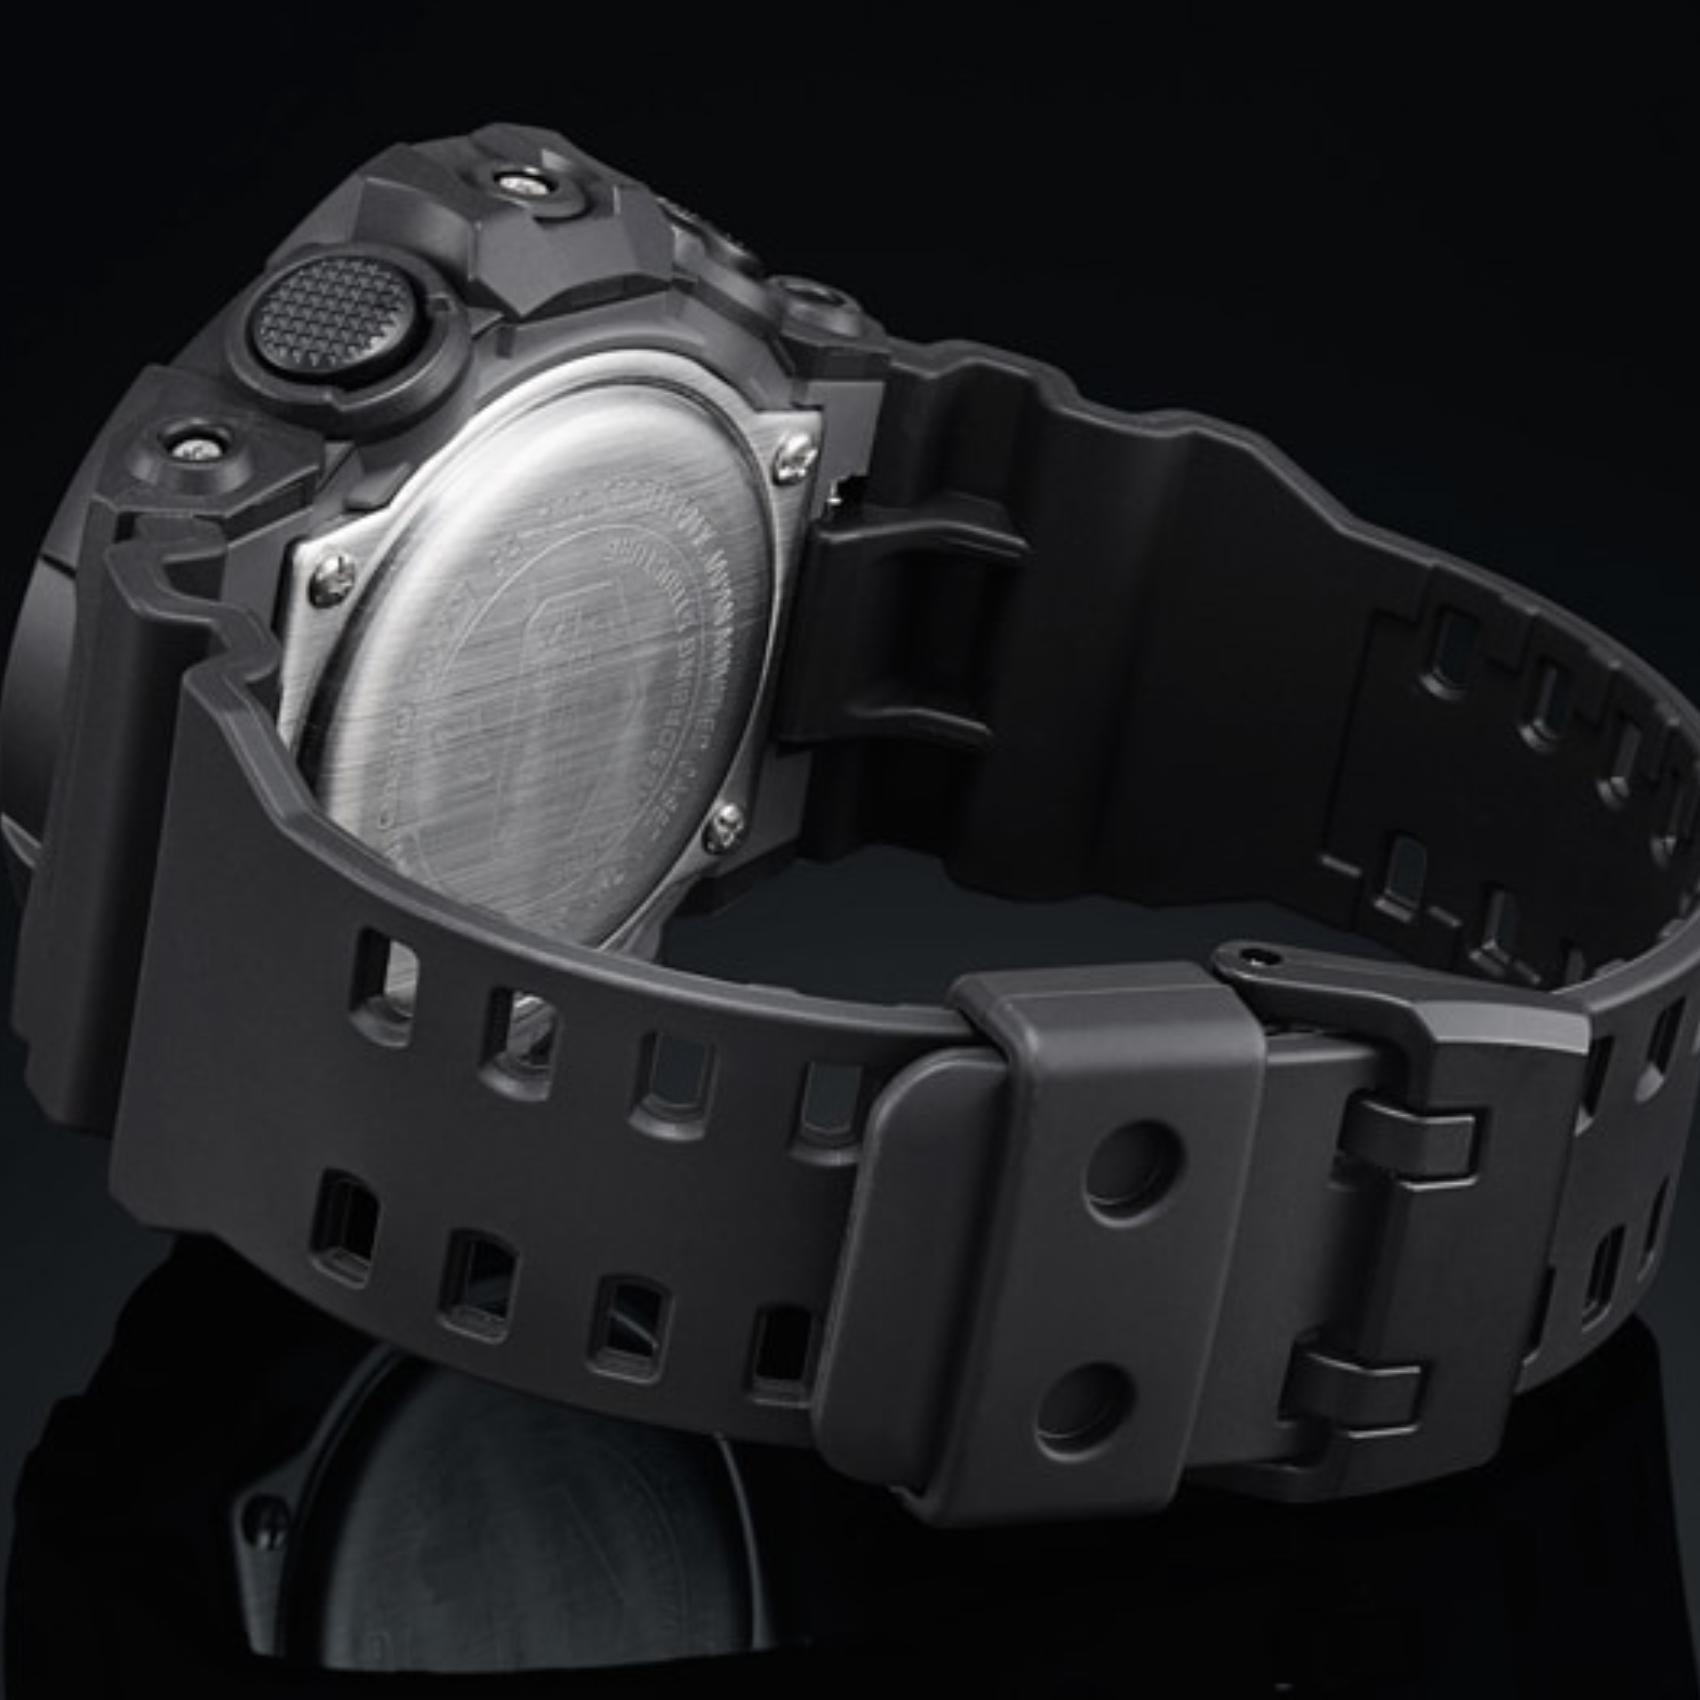 Καταδυτικό ρολόι χρονογράφος Casio G-Shock GA-700-1BER με μαύρο καουτσούκ λουράκ, μαύρο καντράν και στεγανότητα 20ATM-200Μ.